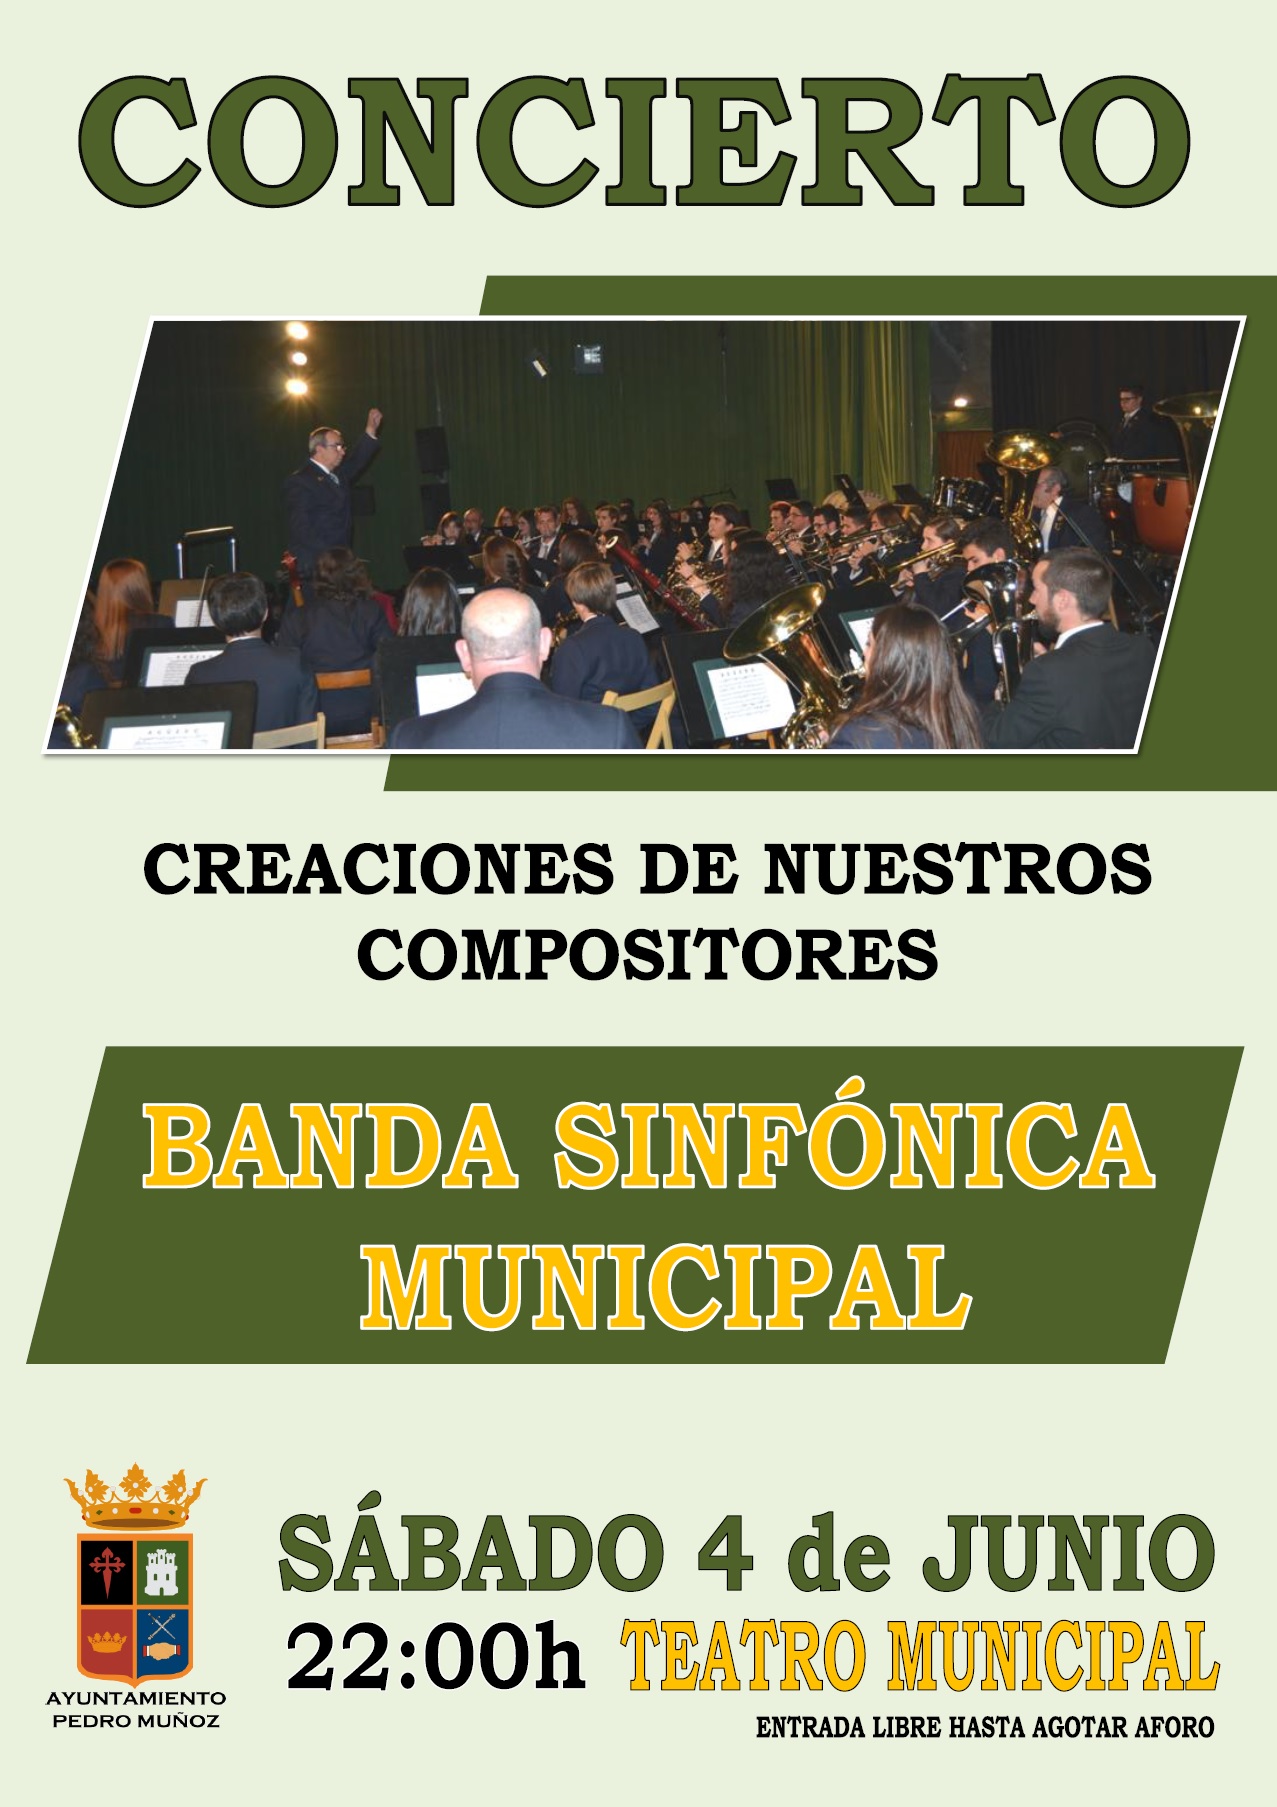 La Banda Sinfónica Municipal ofrecerá un concierto el sábado 4 de junio, a las 22:00h